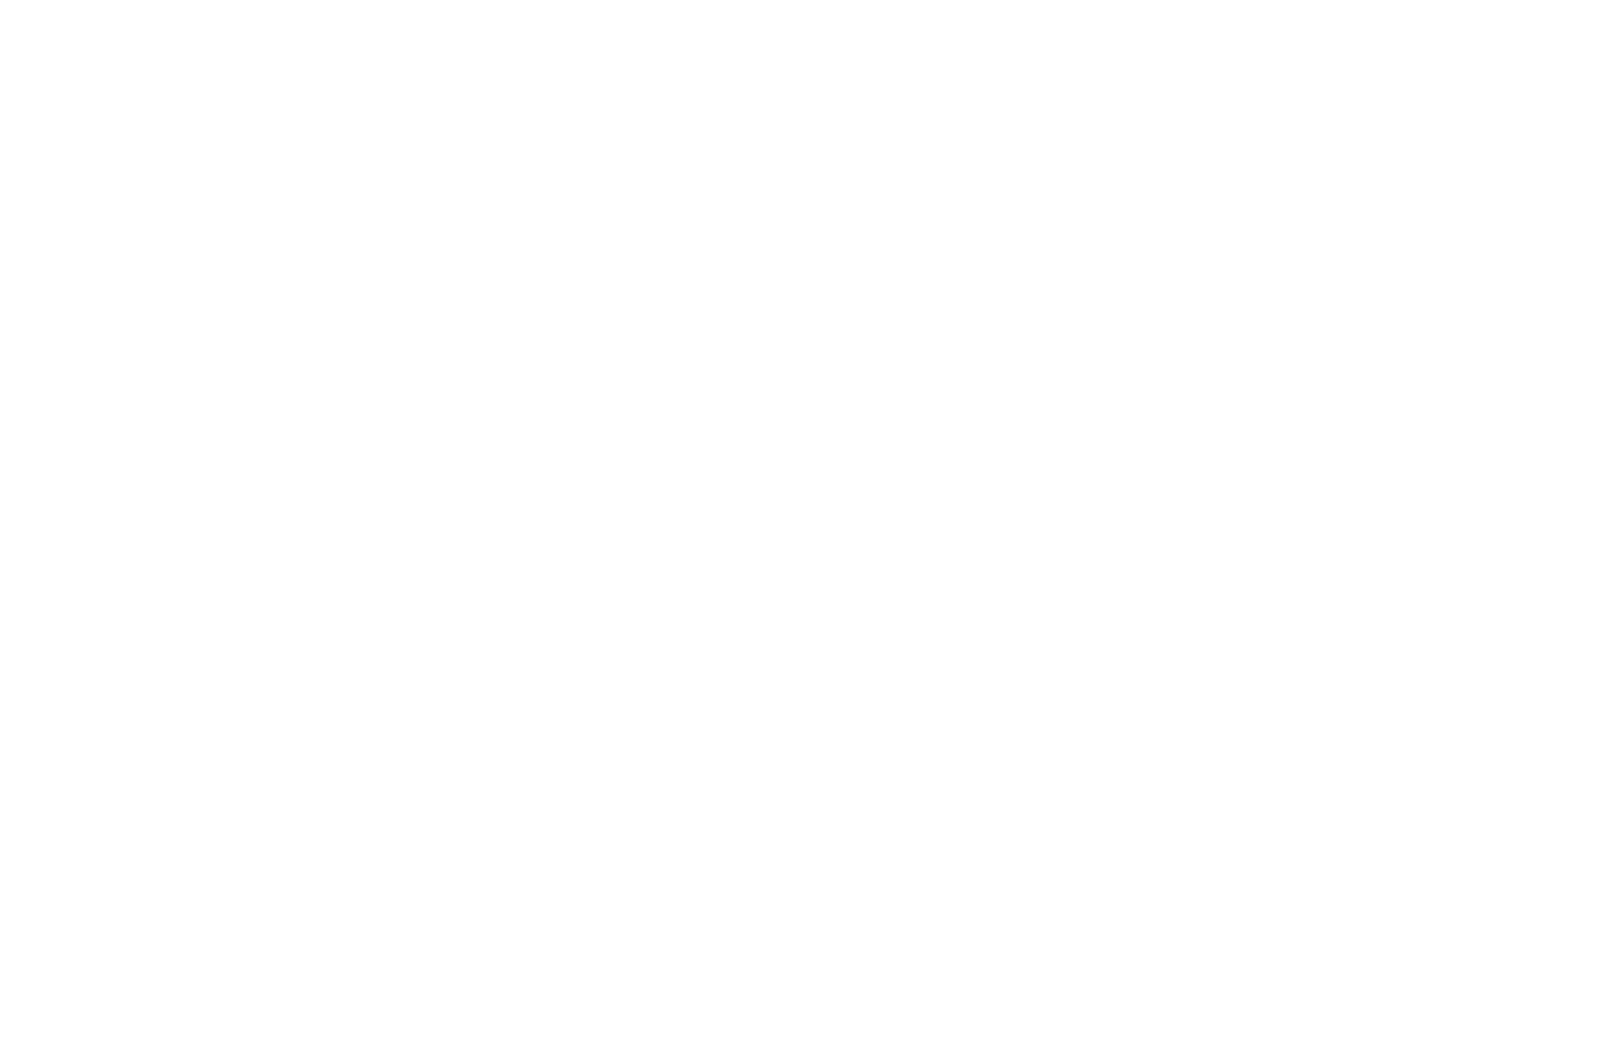 安室奈美恵のツアーオフィシャルグッズを”元テレビ通販のカリスマ”高田明が紹介する動画が公開サムネイル画像!